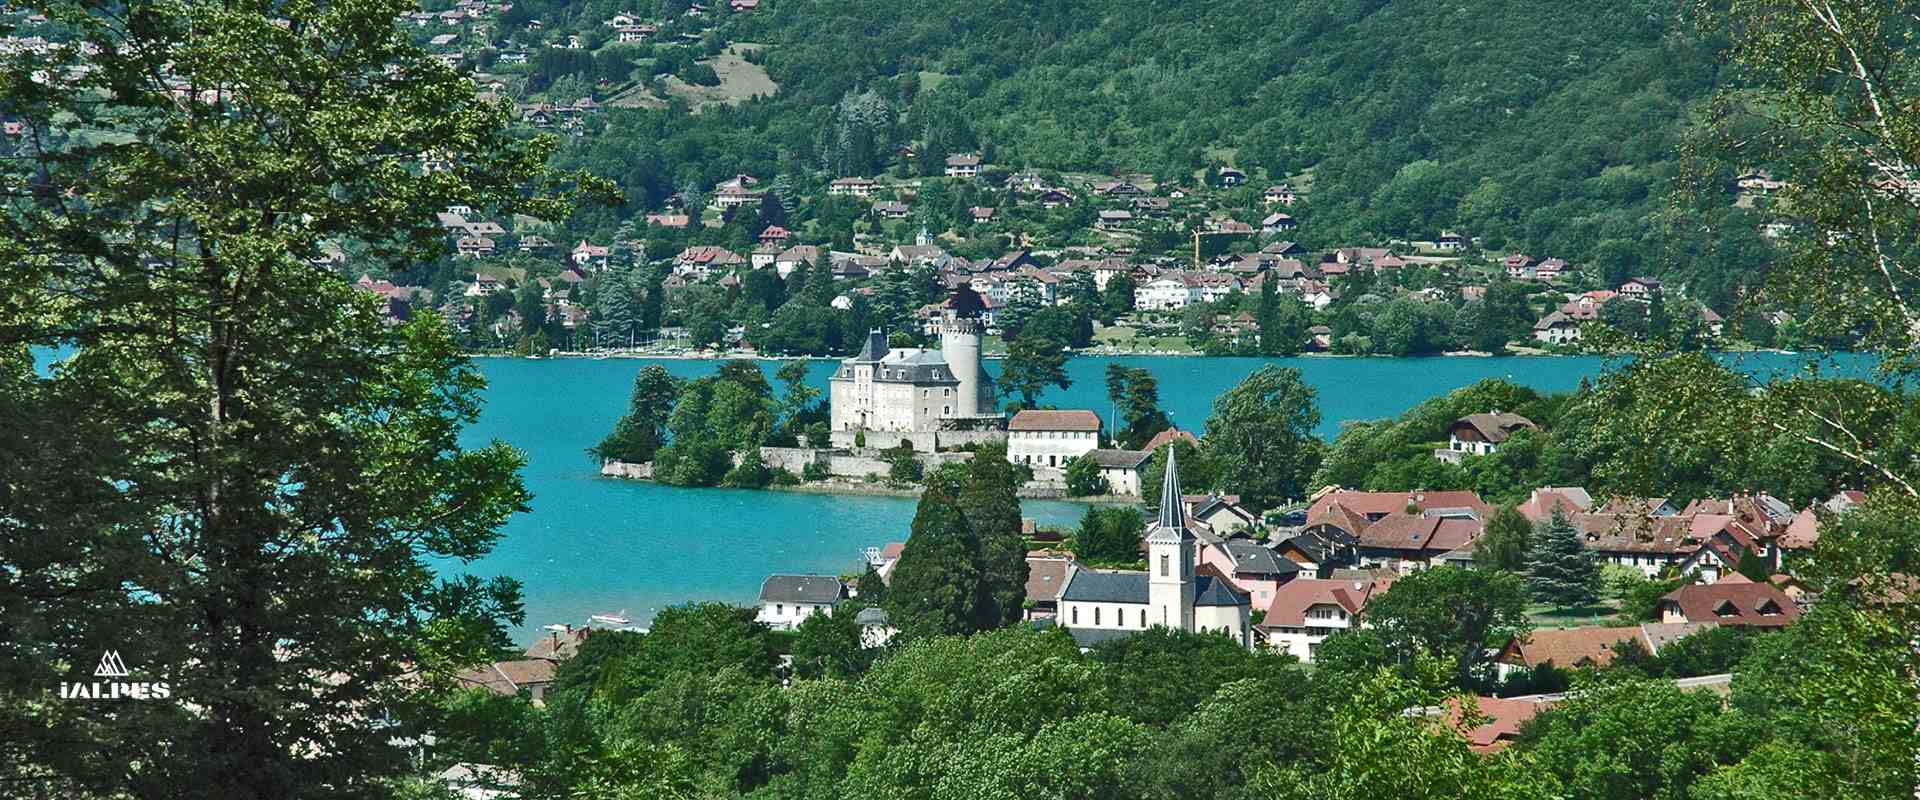 Le lac d'Annecy et le château de Duingt, Haute-Savoie